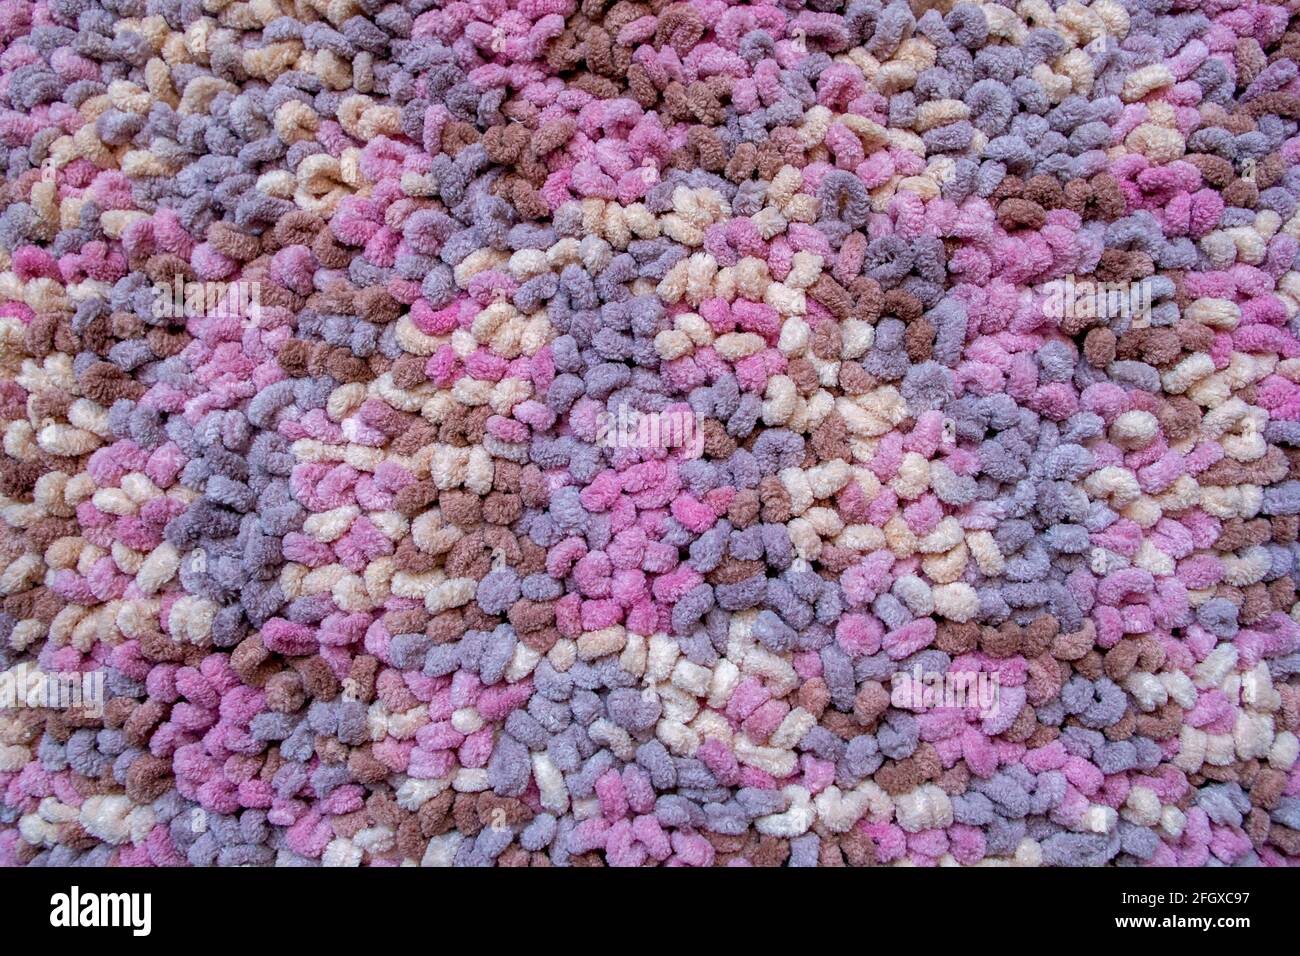 La superficie di un tappeto multicolore lavorato a maglia da un filo di lana denso e soffice, che è una serie di anelli arrotondati di colori marrone, rosa, viola e beige. R Foto Stock